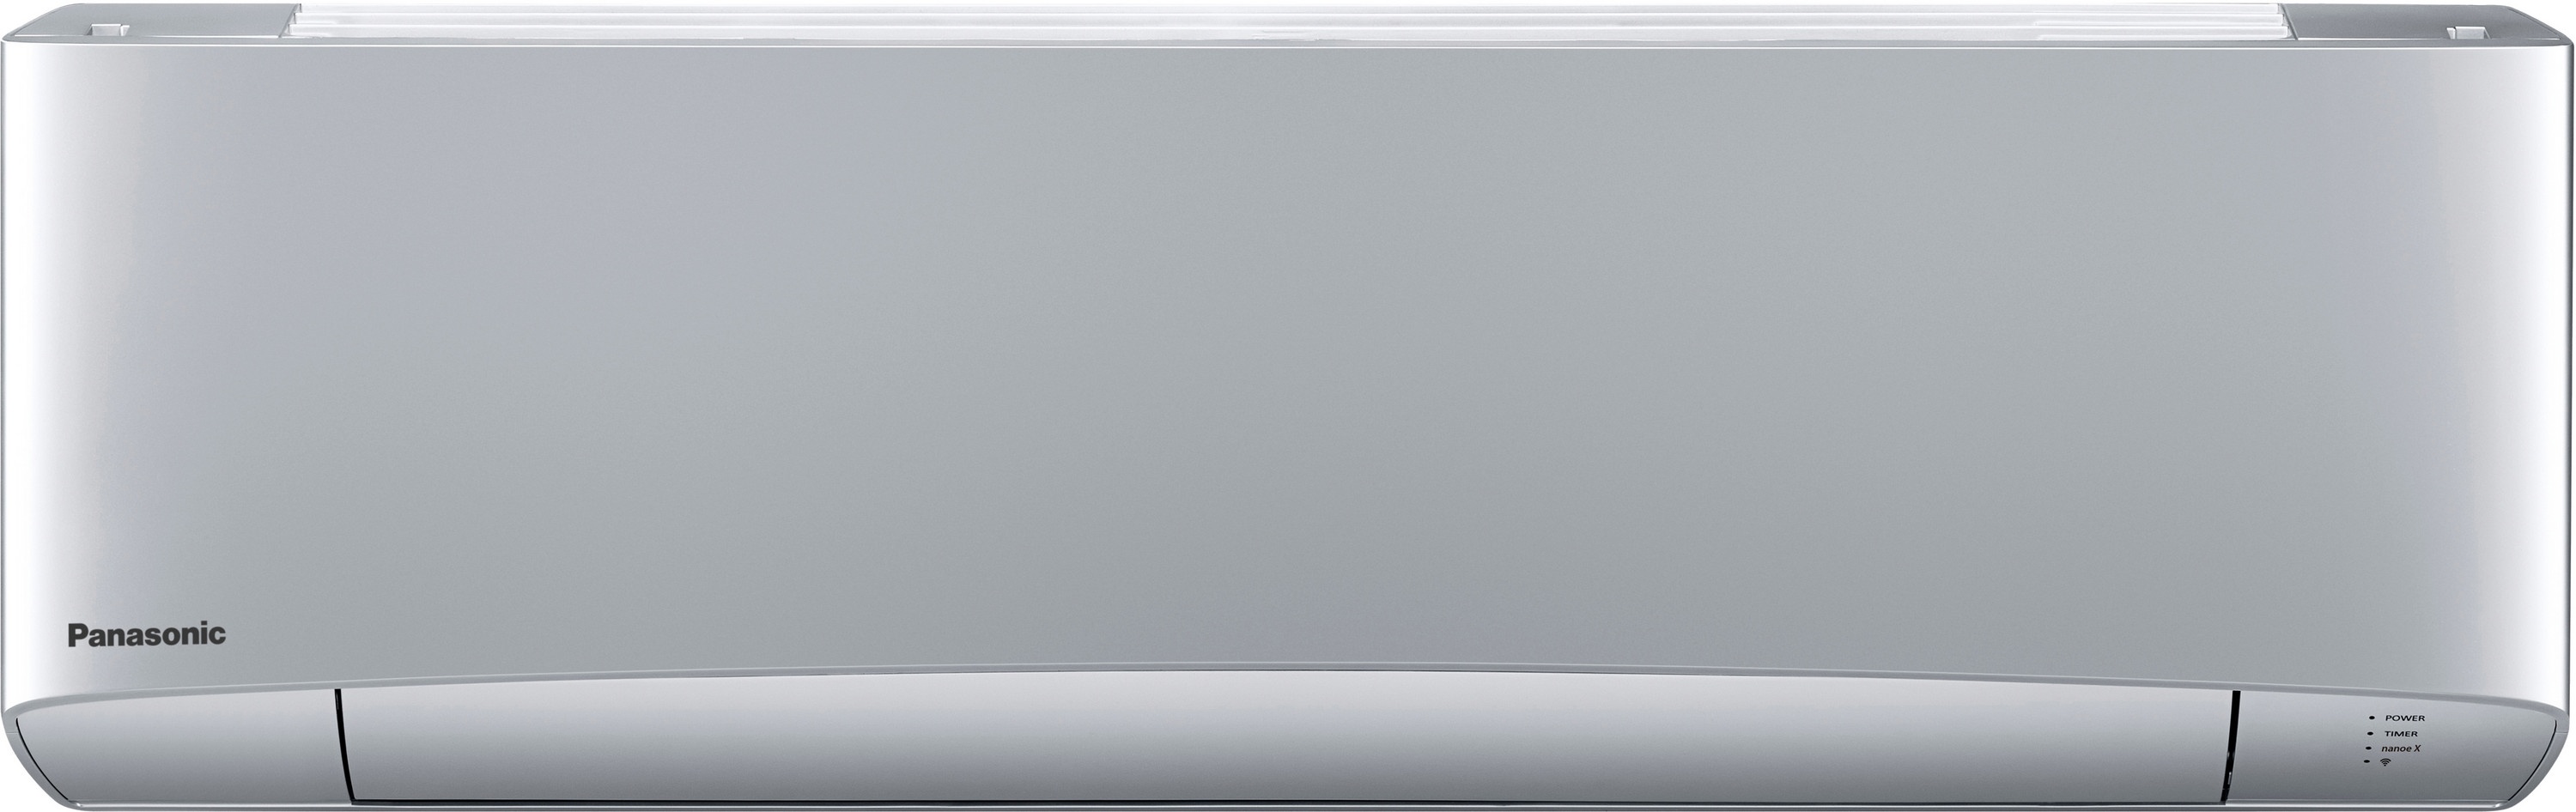 Внутренний блок мультисплит-системы Panasonic Flagship Silver CS-XZ20TKEW в интернет-магазине, главное фото